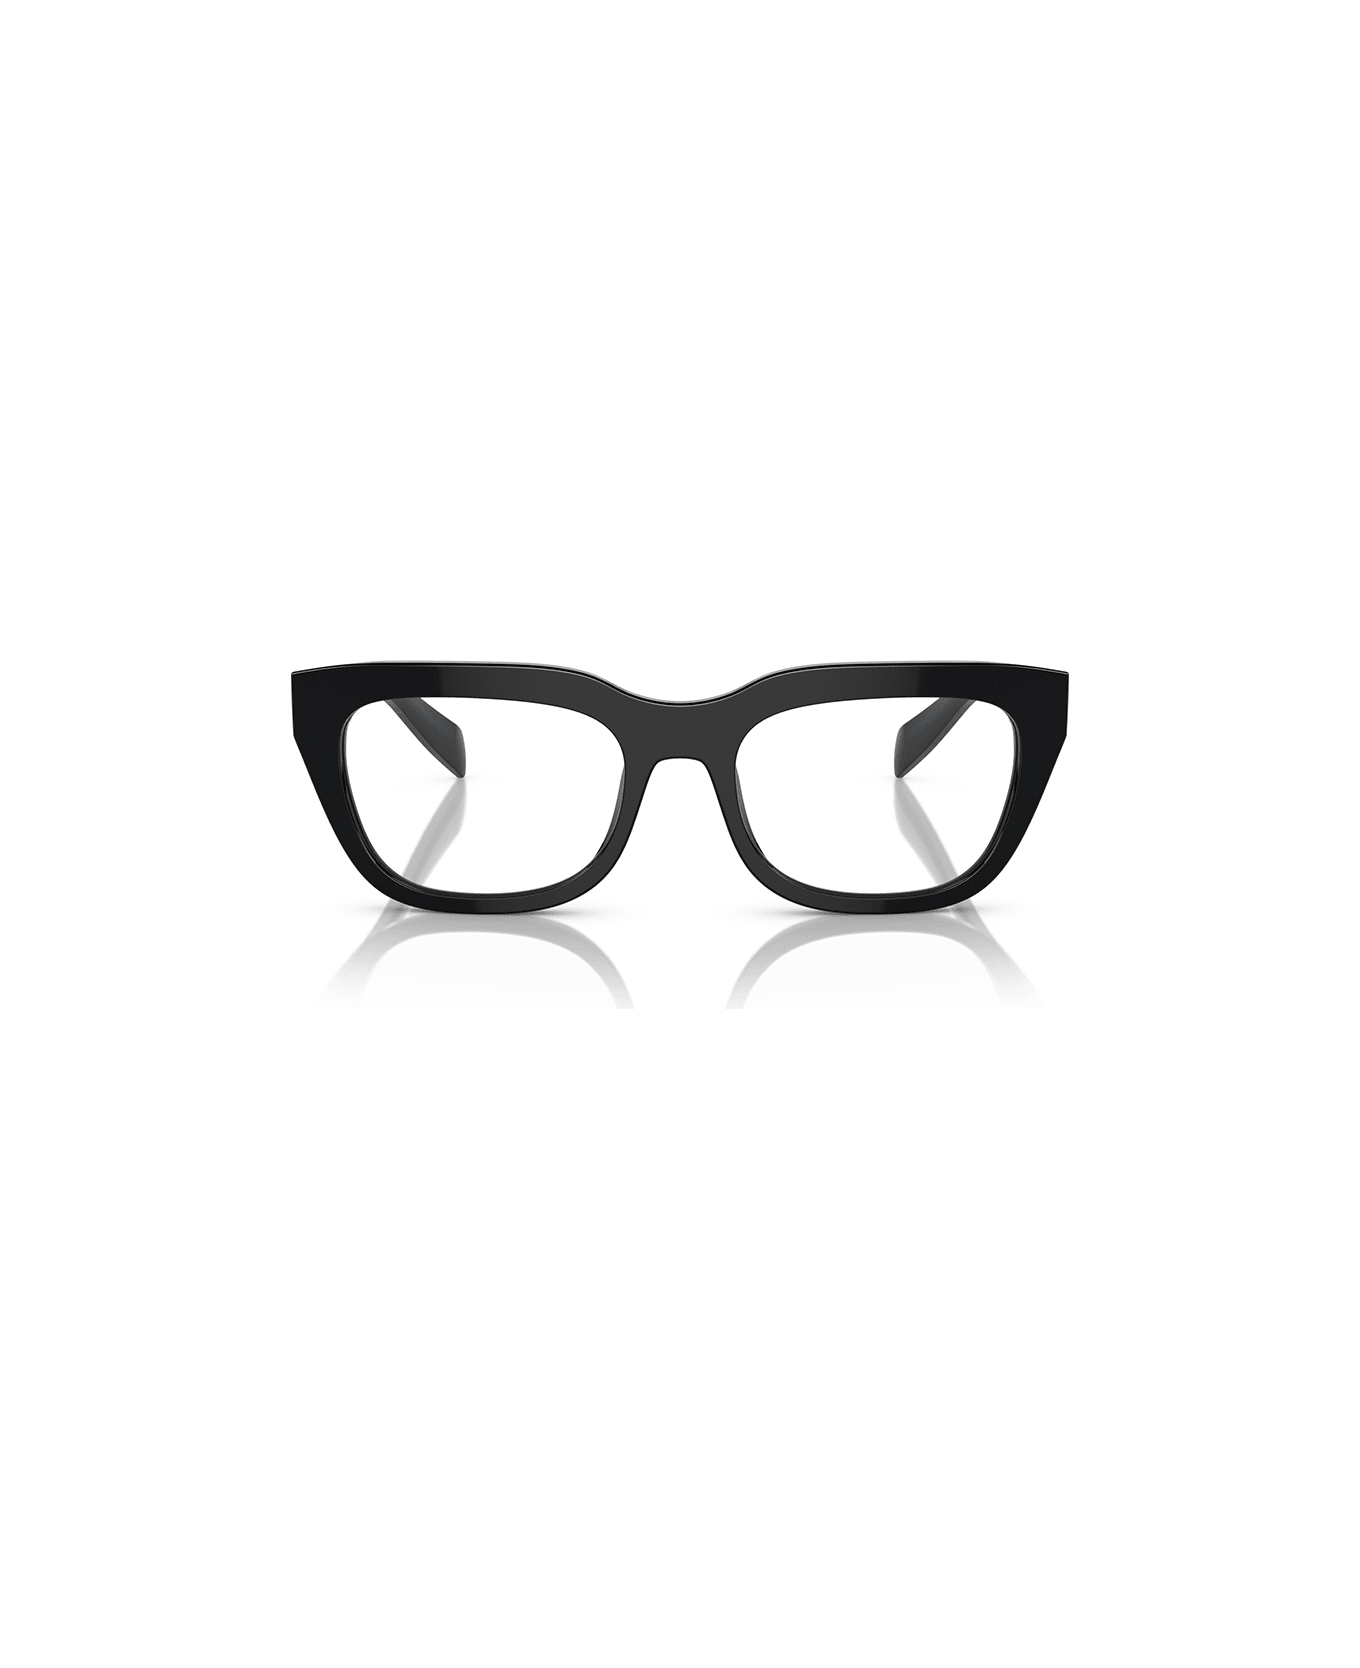 Prada Eyewear Eyewear - Nero